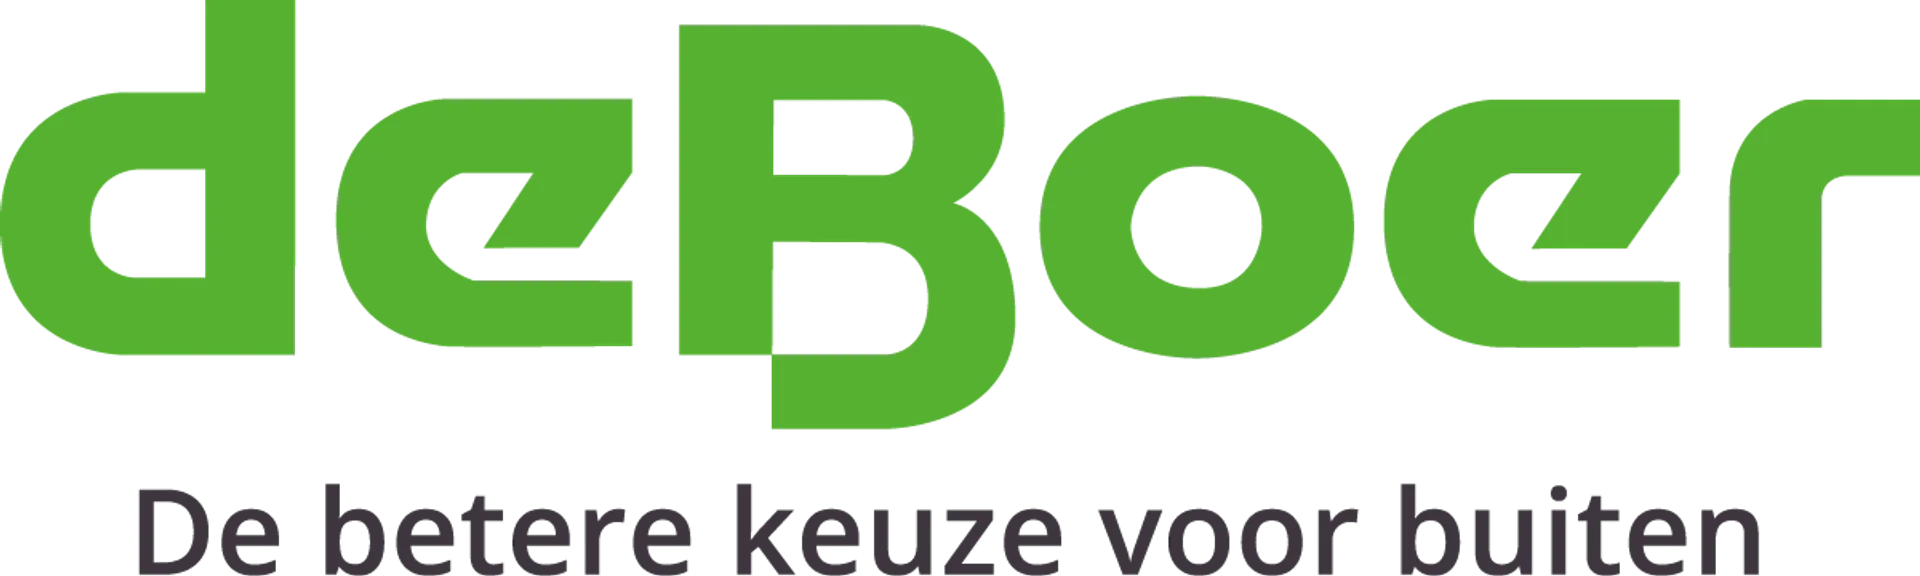 DE BOER DRACHTEN logo